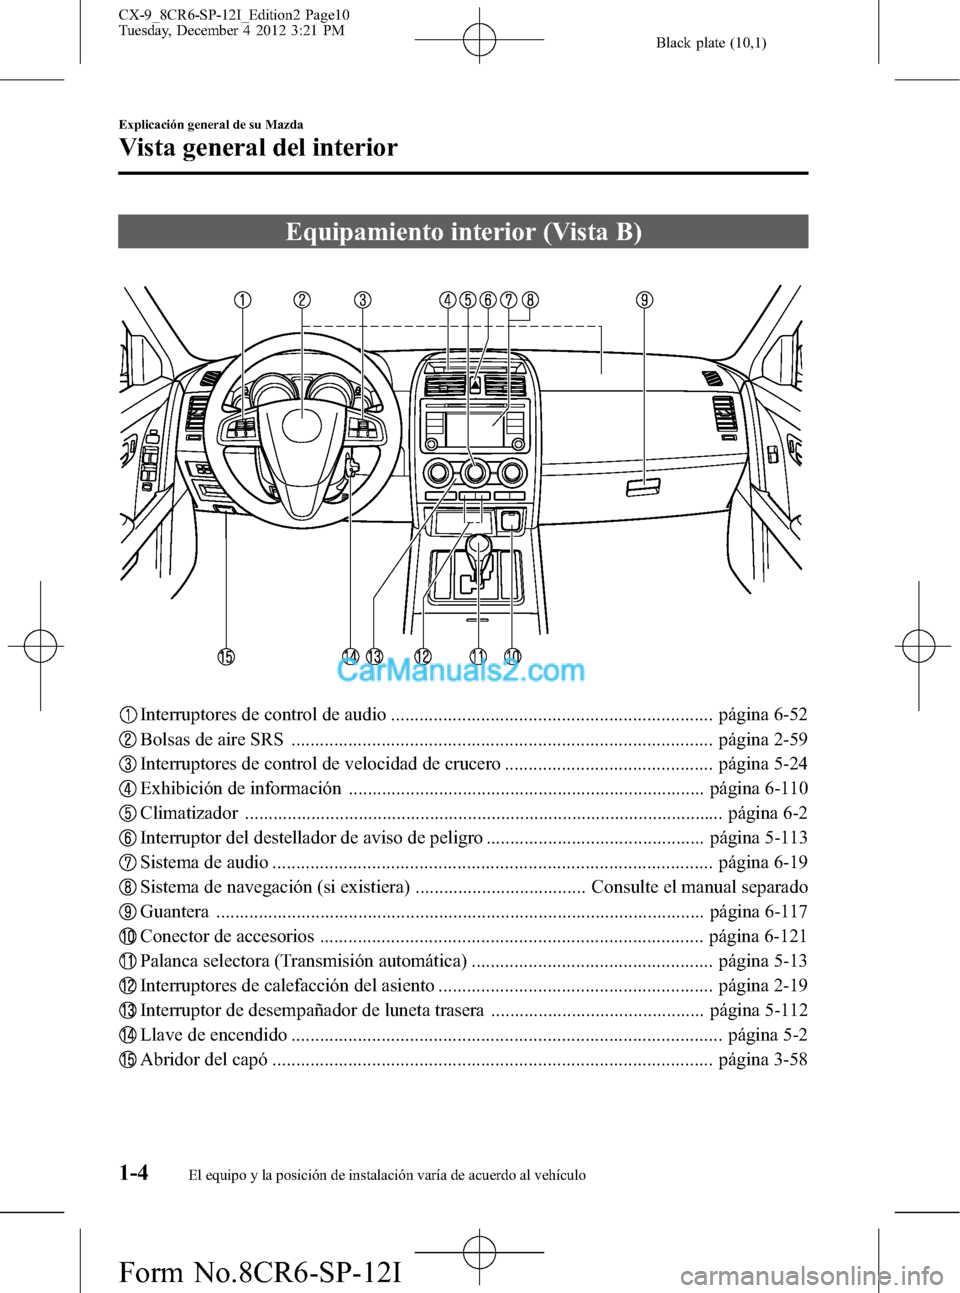 MAZDA MODEL CX-9 2015  Manual del propietario (in Spanish)  Black plate (10,1)
Equipamiento interior (Vista B)
Interruptores de control de audio .................................................................... página 6-52
Bolsas de aire SRS ..............